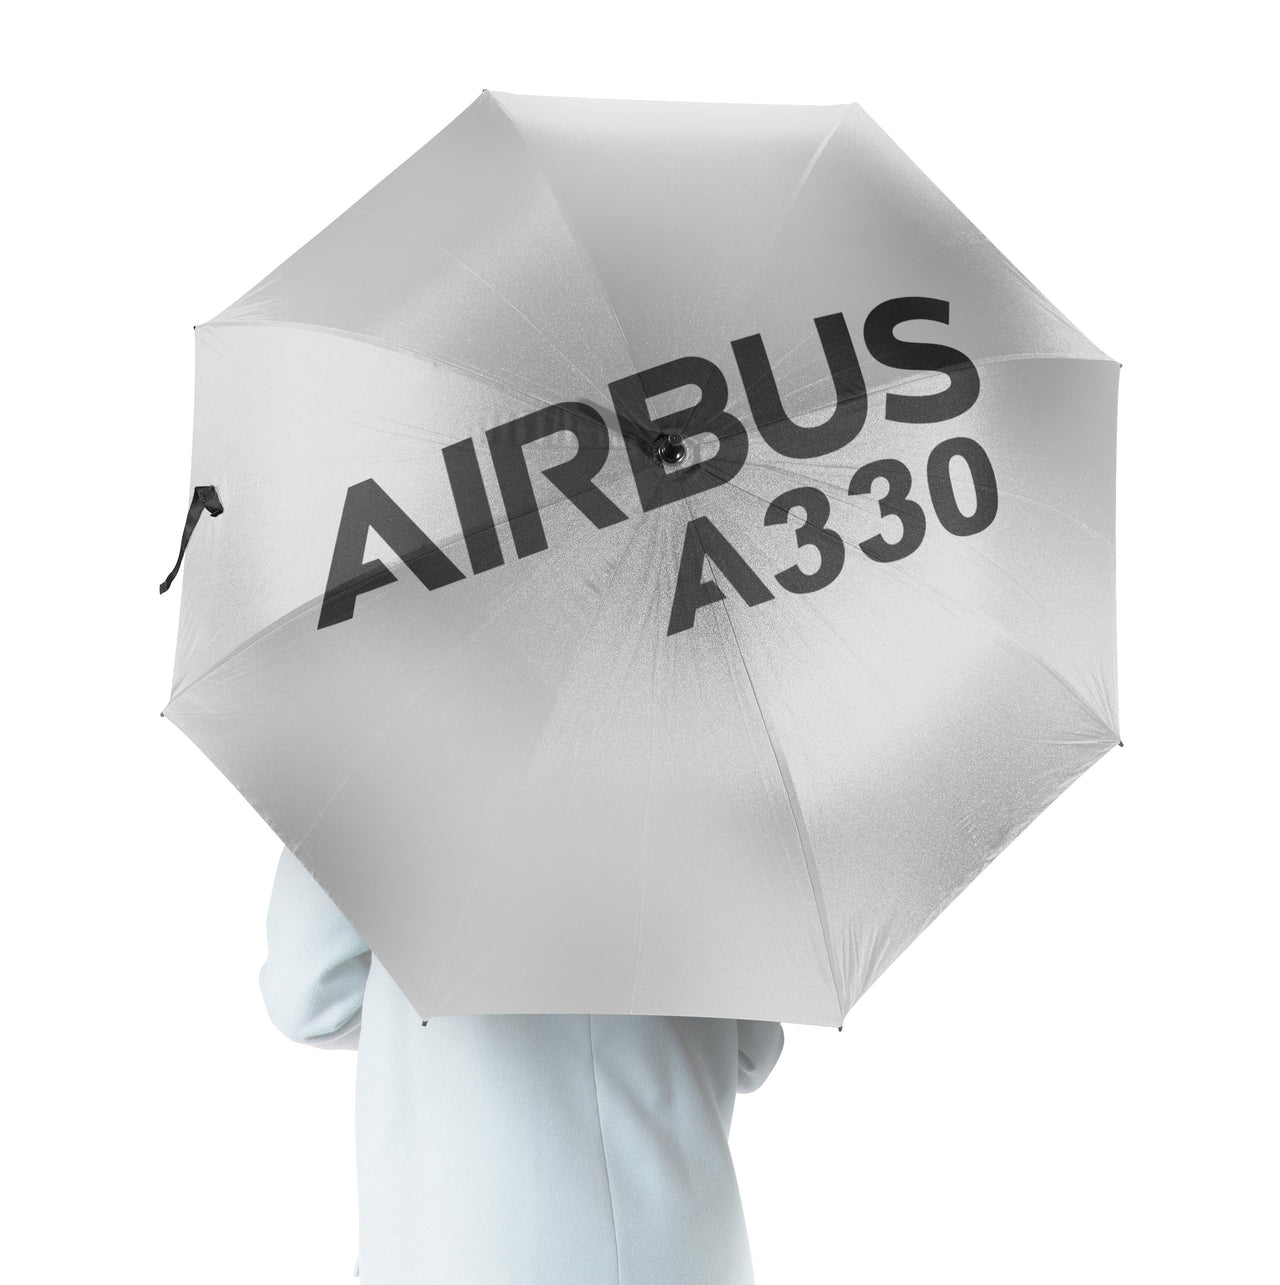 Airbus A330 & Text Designed Umbrella